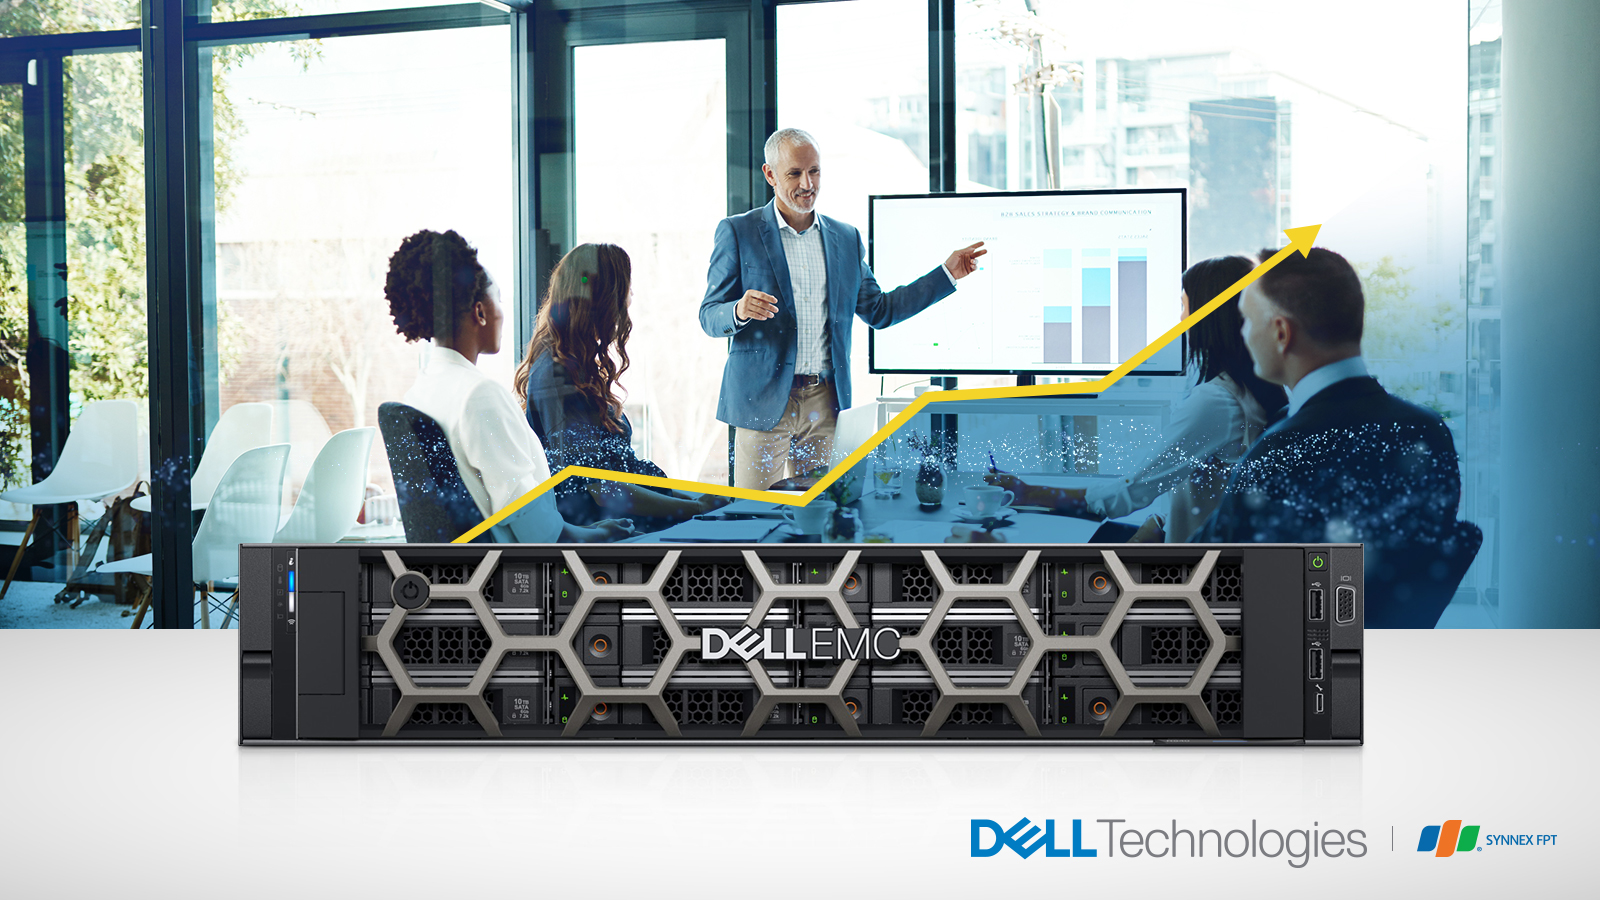 Server Dell R540 sự lựa chọn hoàn hảo dành riêng khối doanh nghiệp đang phát triển